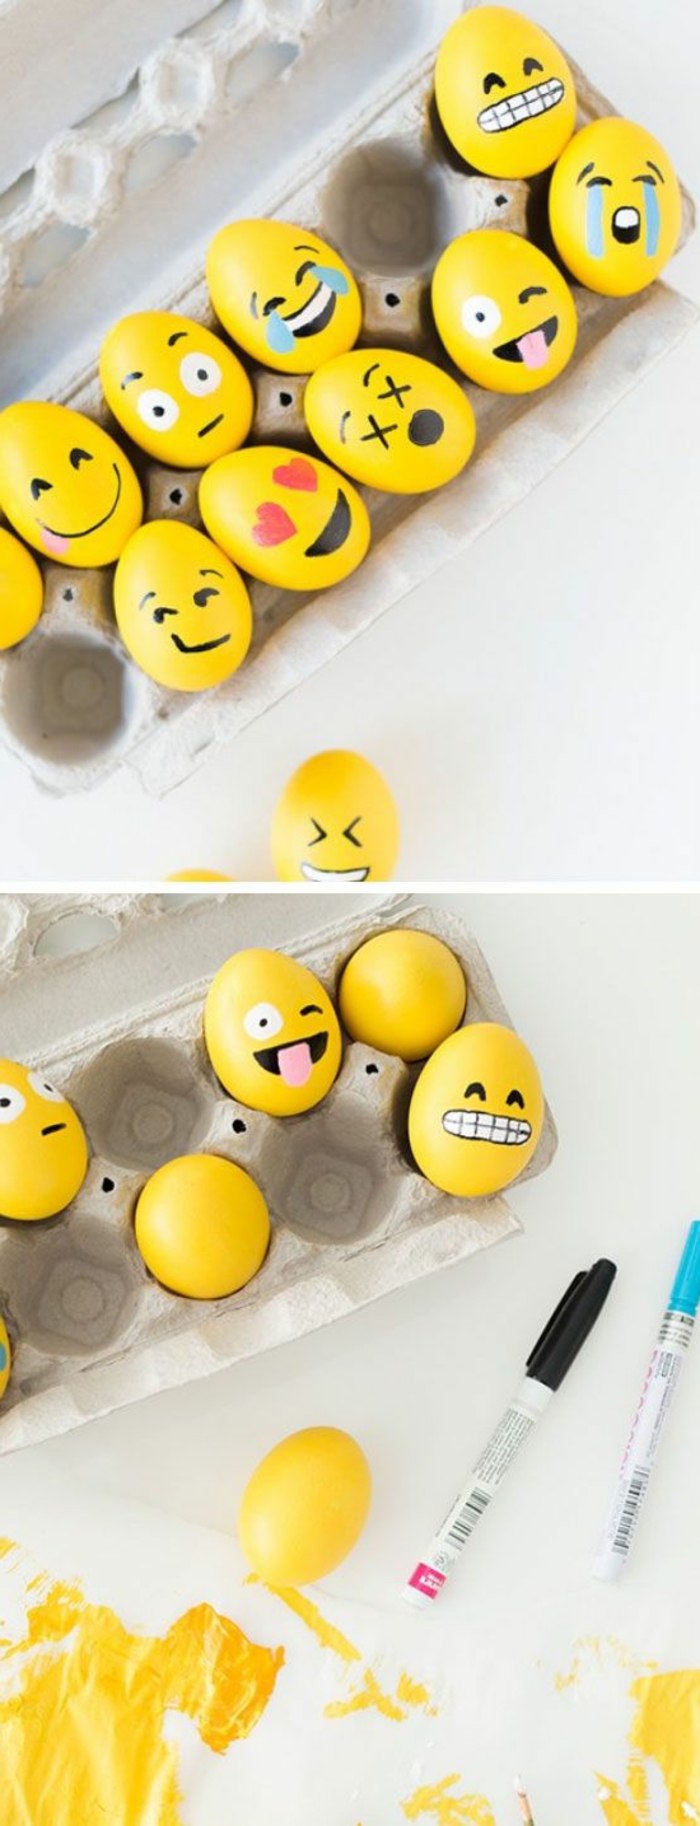 Festék ötleteket a sárga húsvéti tojásokra emojisokkal - különböző megjelenésű